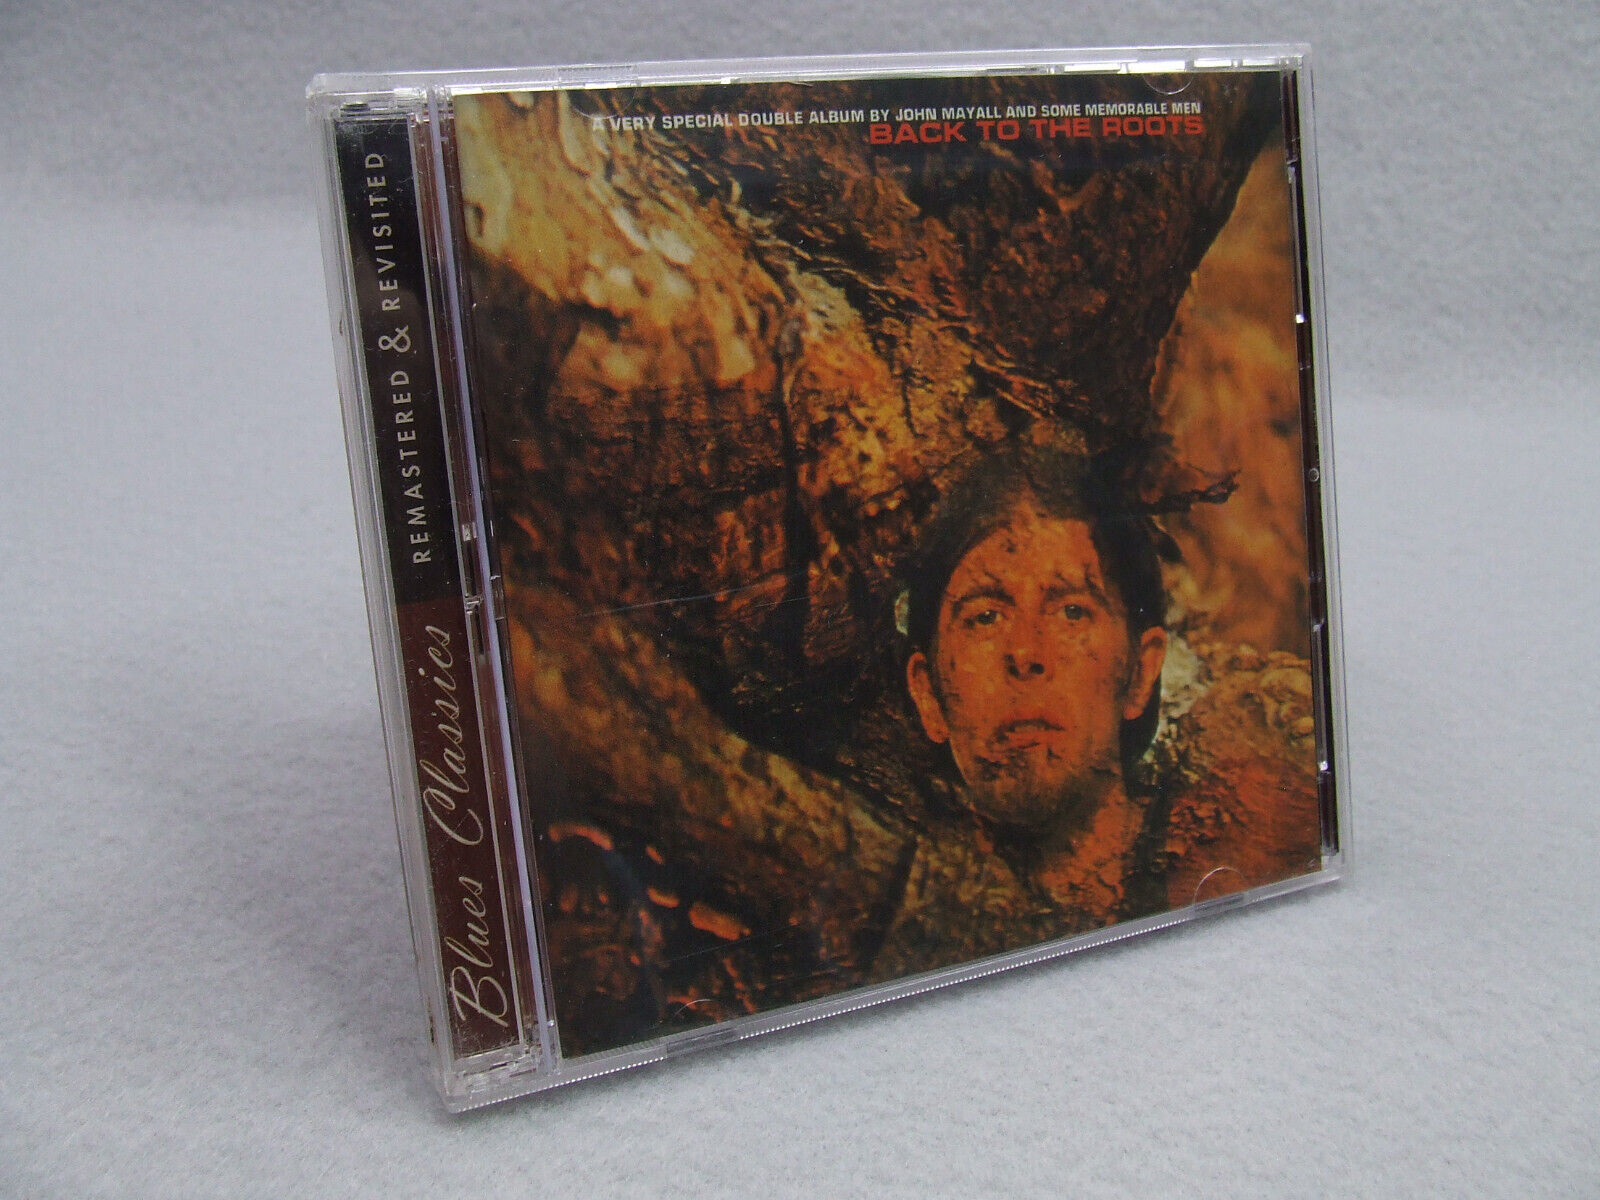 John Mayall - Back to the Roots (2 CD Set, 2001 Polydor) Bonus Tracks, Remixes